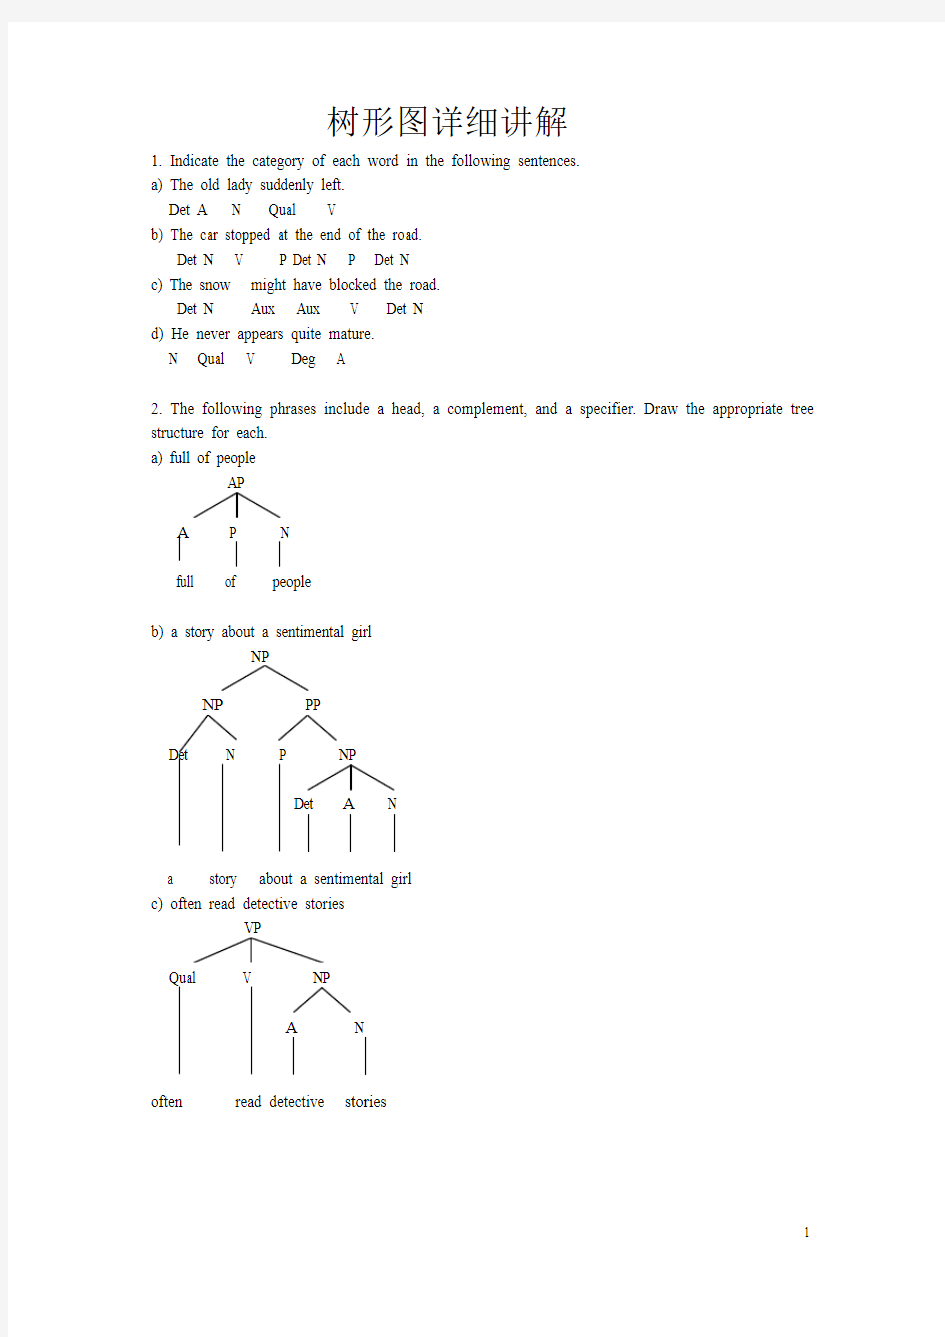 教你如何画语言学树型图